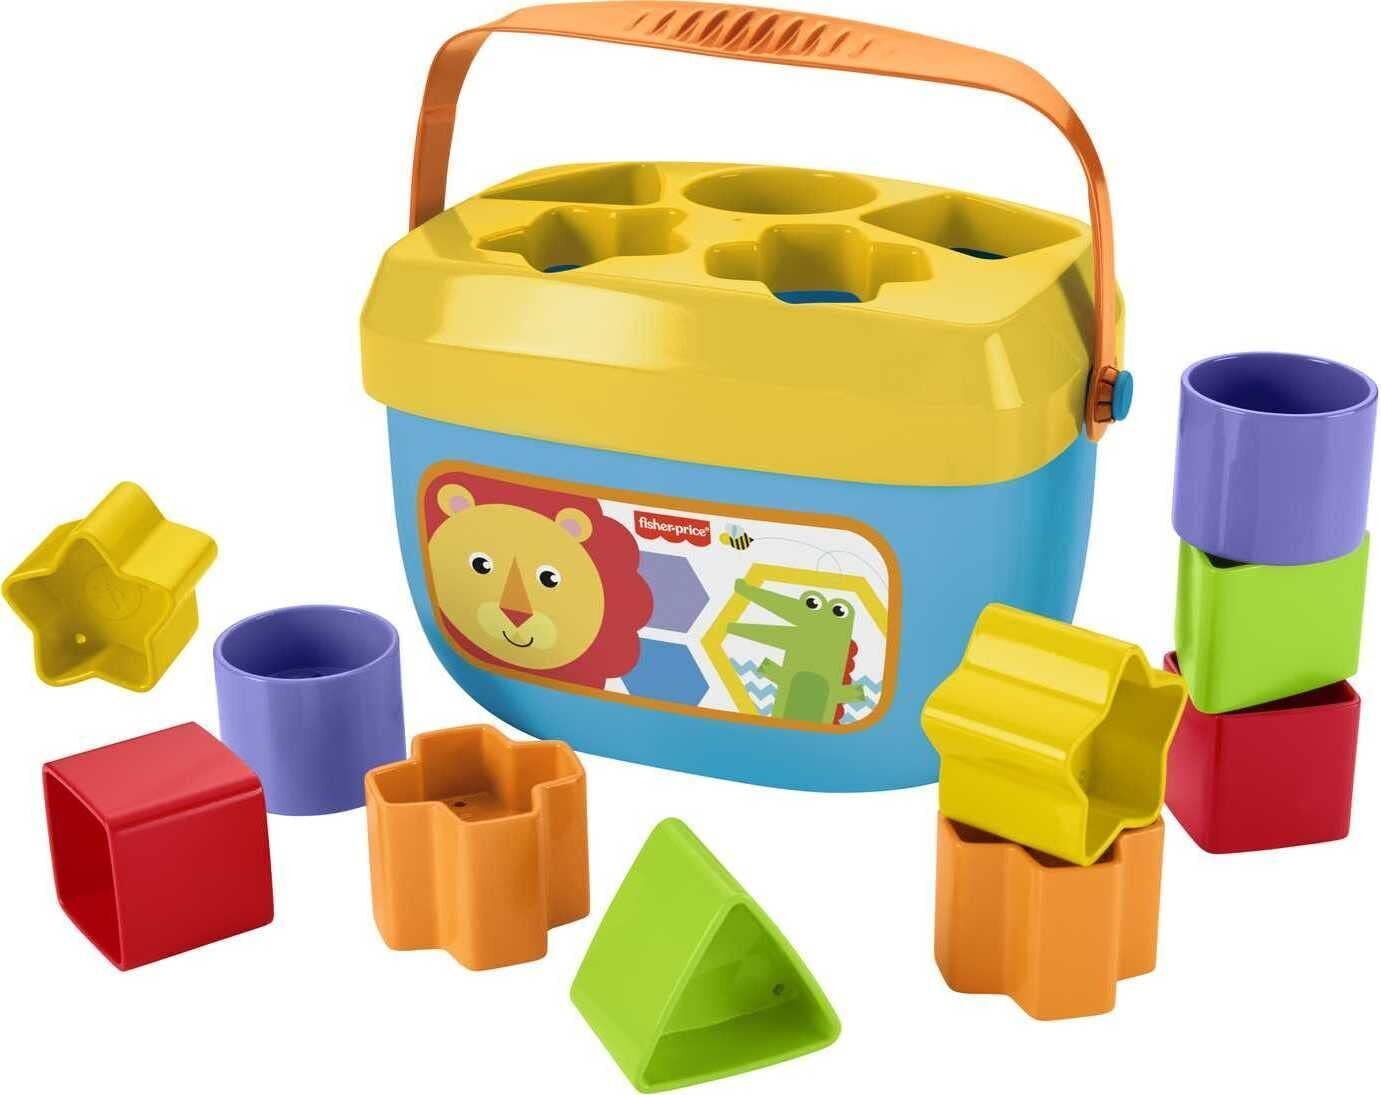 Baby Toy Gift Set: Stacking Toy & Blocks